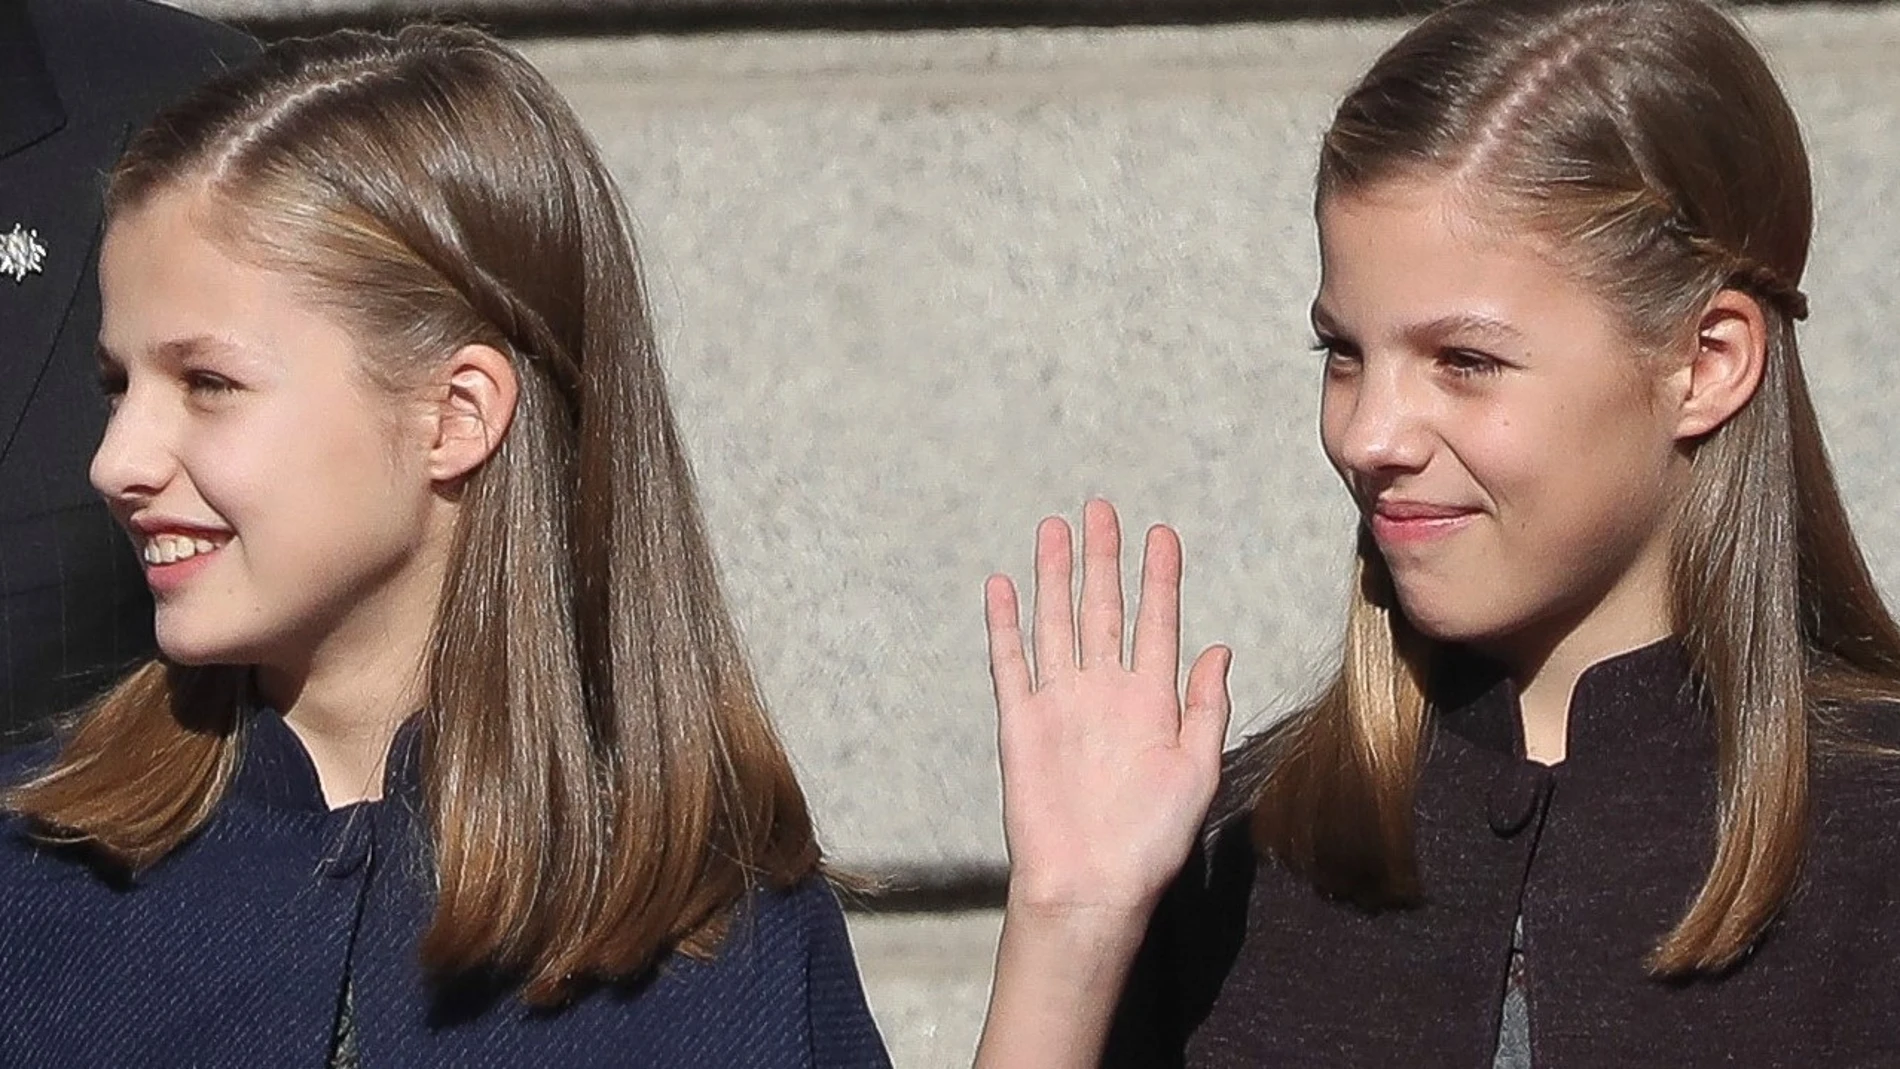 La Infanta Sofía cumple 12 años entre la discreción y el segundo plano